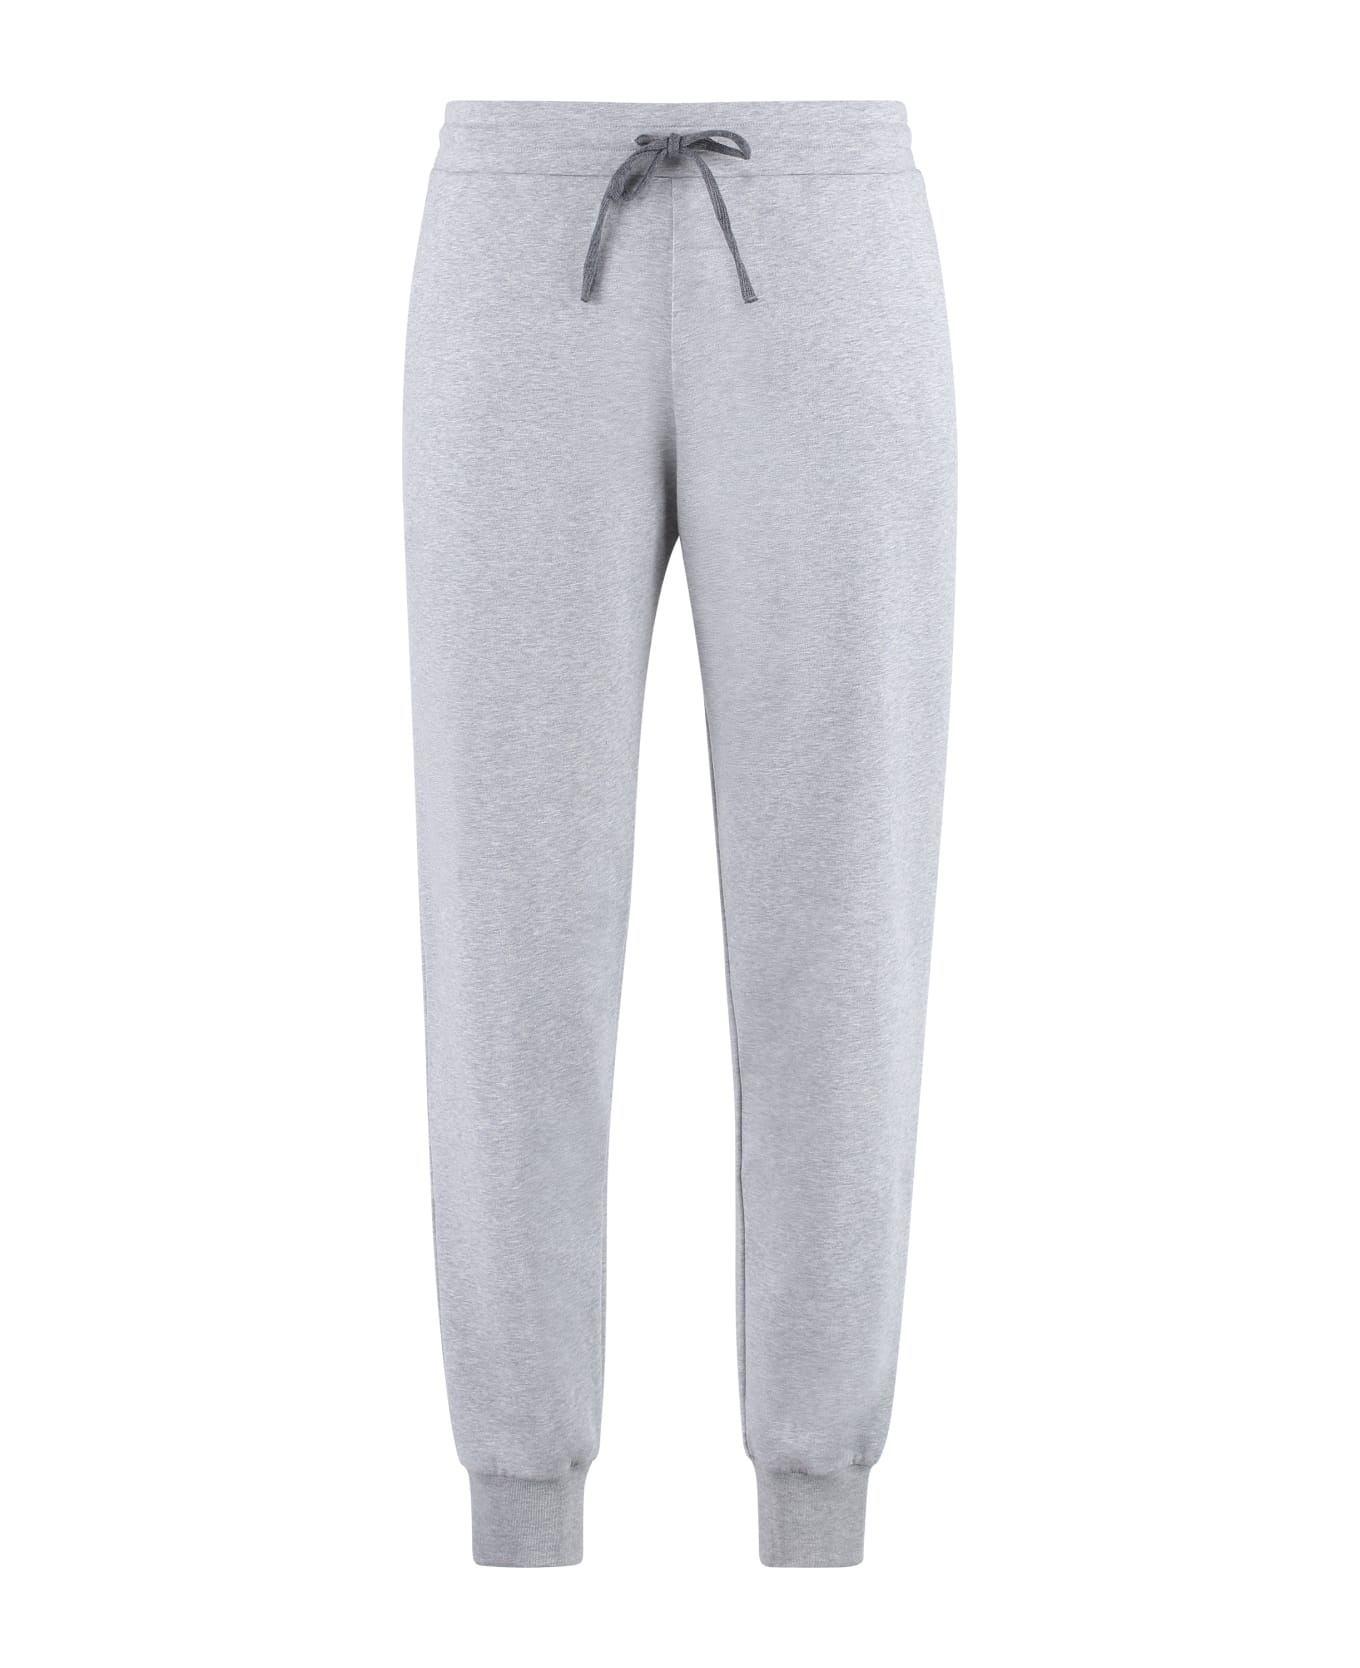 Canali Cotton Track-pants - grey スウェットパンツ